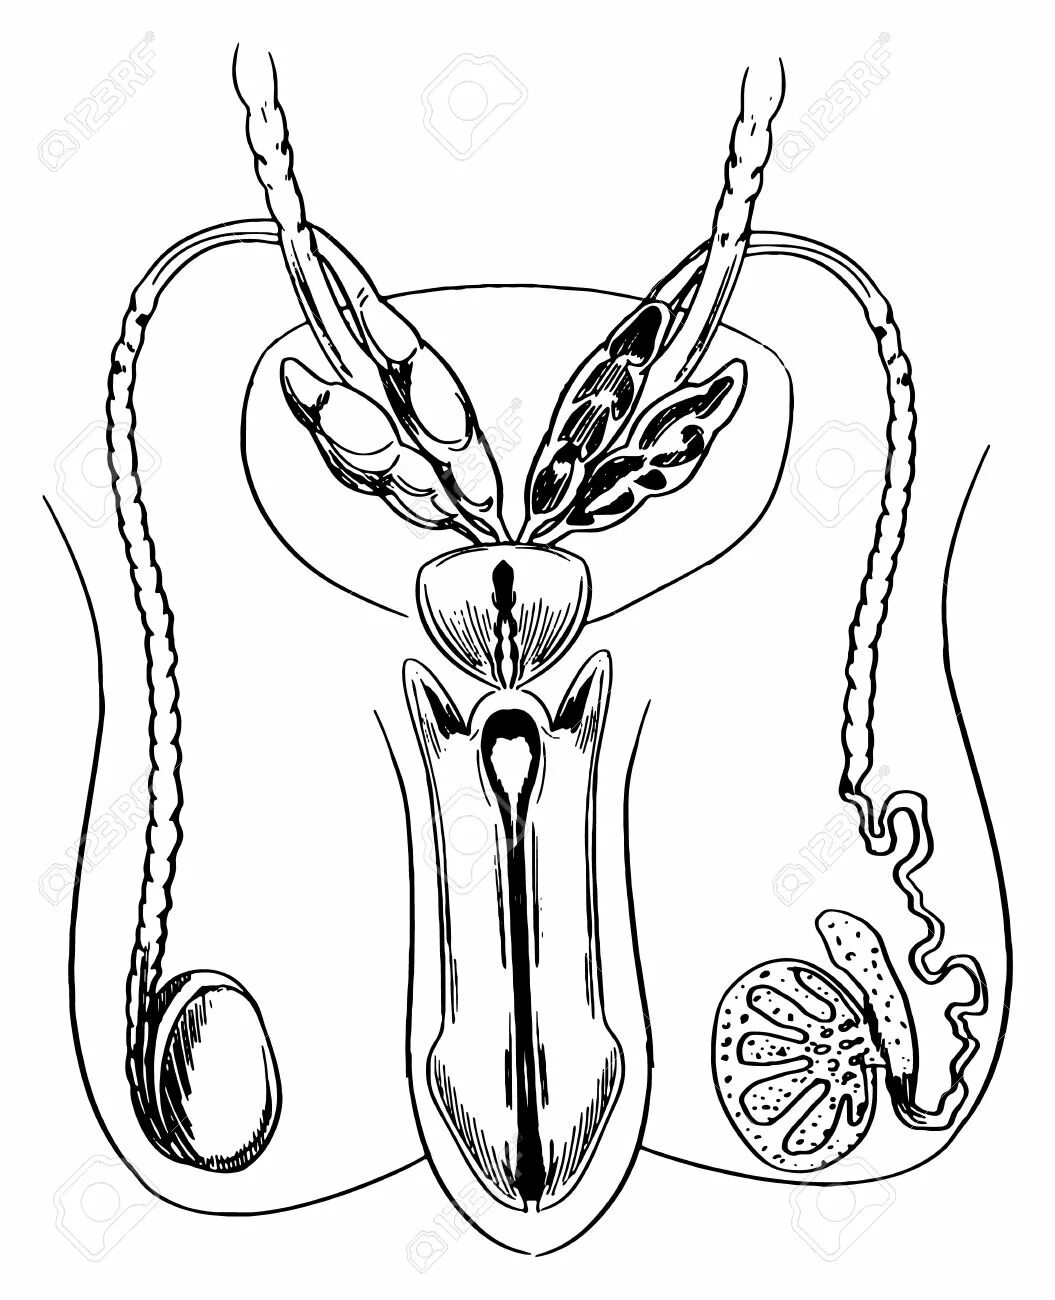 Найти мужской орган. Рисование половых органов. Эскиз члена. Рисование мужского полового органа. Изображение половых органов для детей.